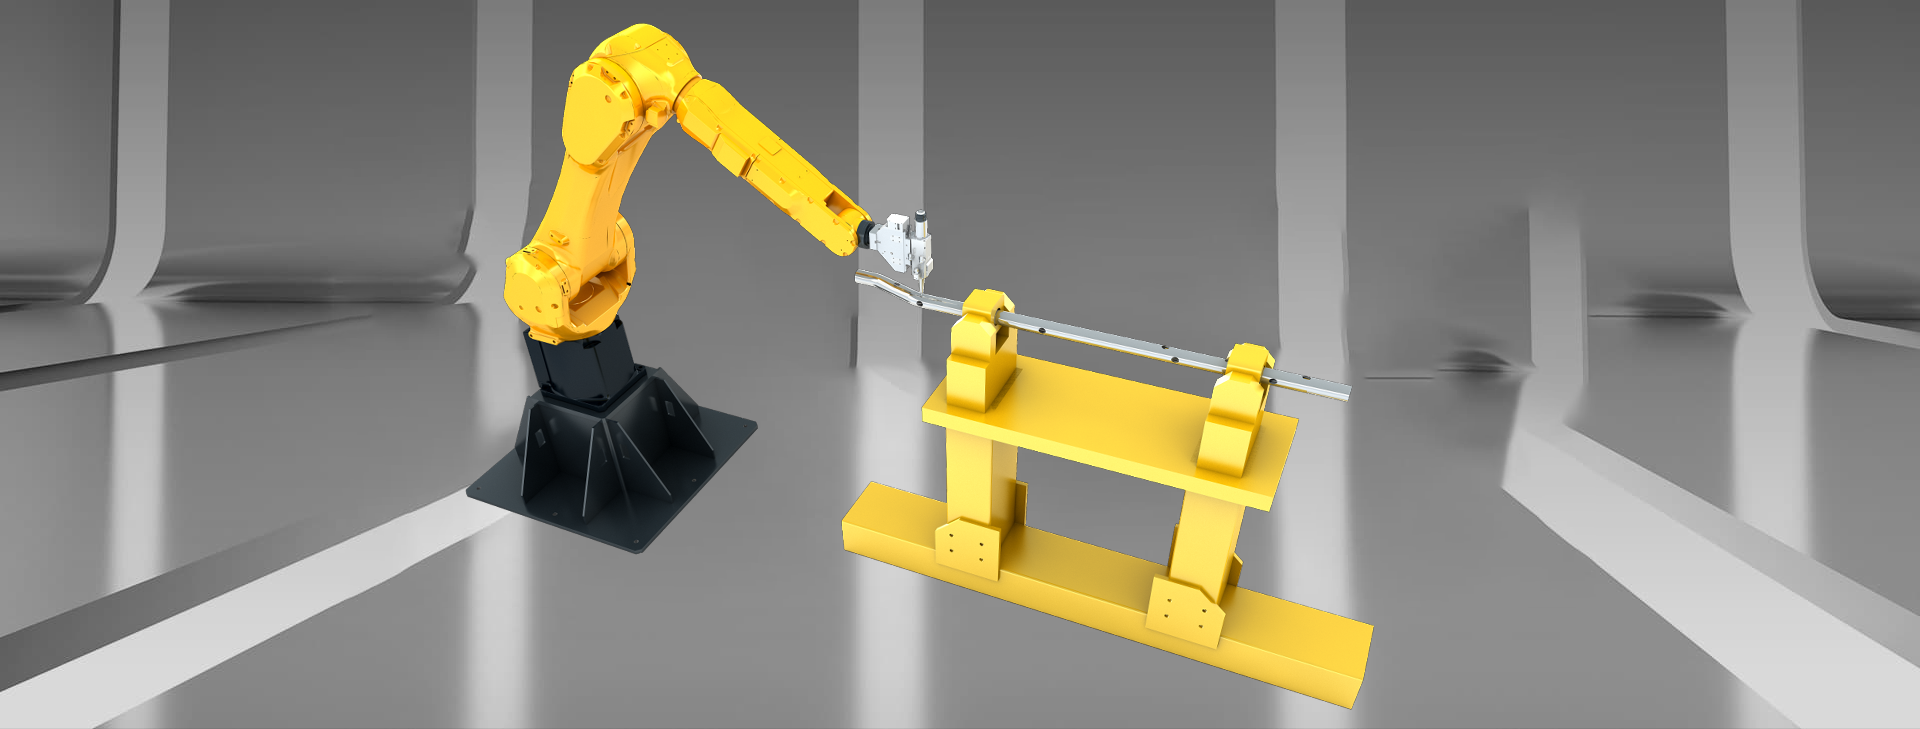 3D Робот лазерной резки с подставкой типа